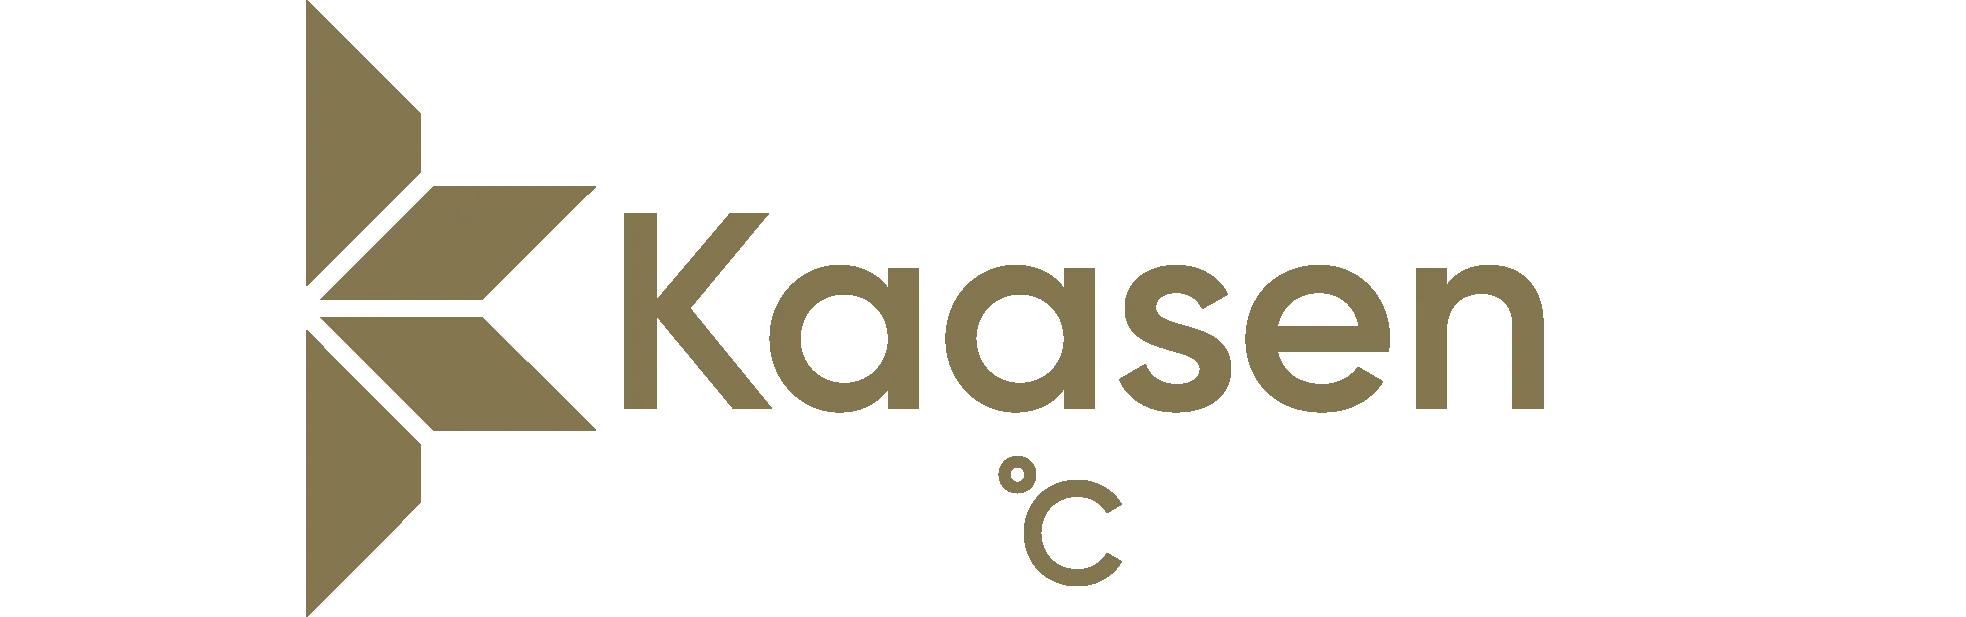 white and gold full kaasen pro logo inverted